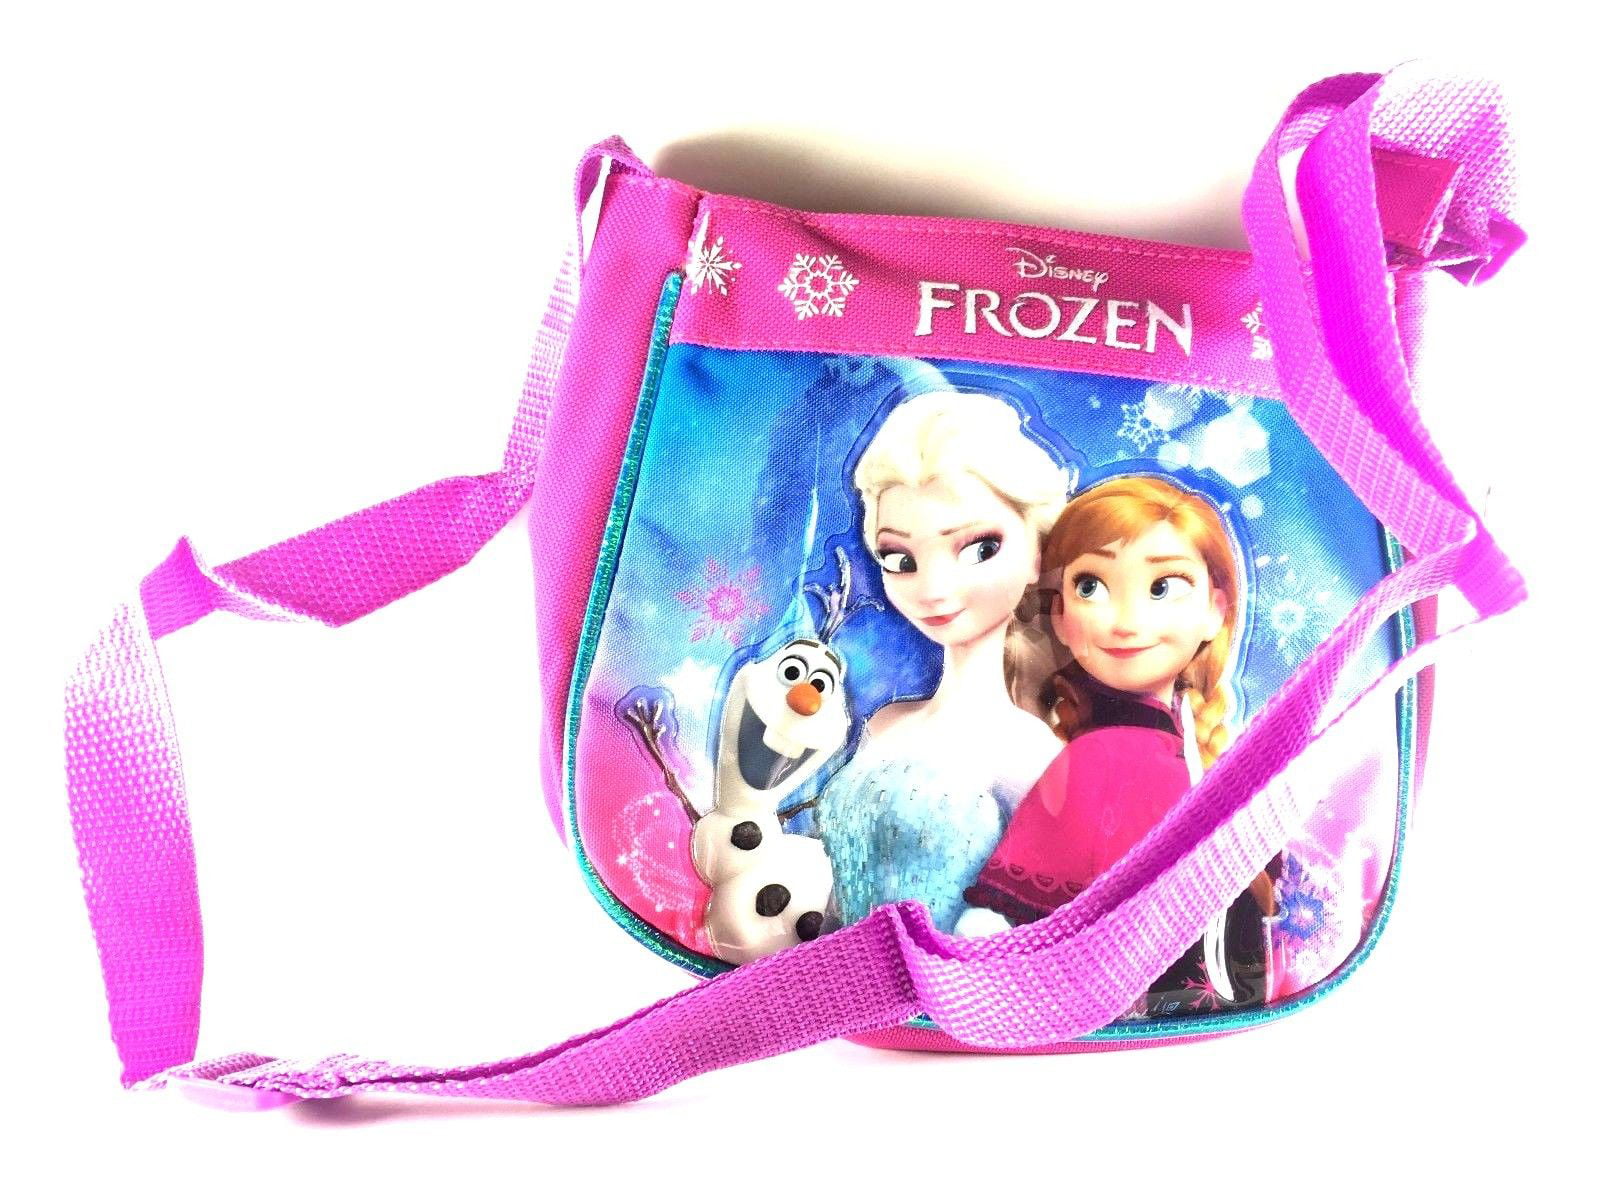 Disney Frozen Elsa Anna Carry-On Duffel Bag 18